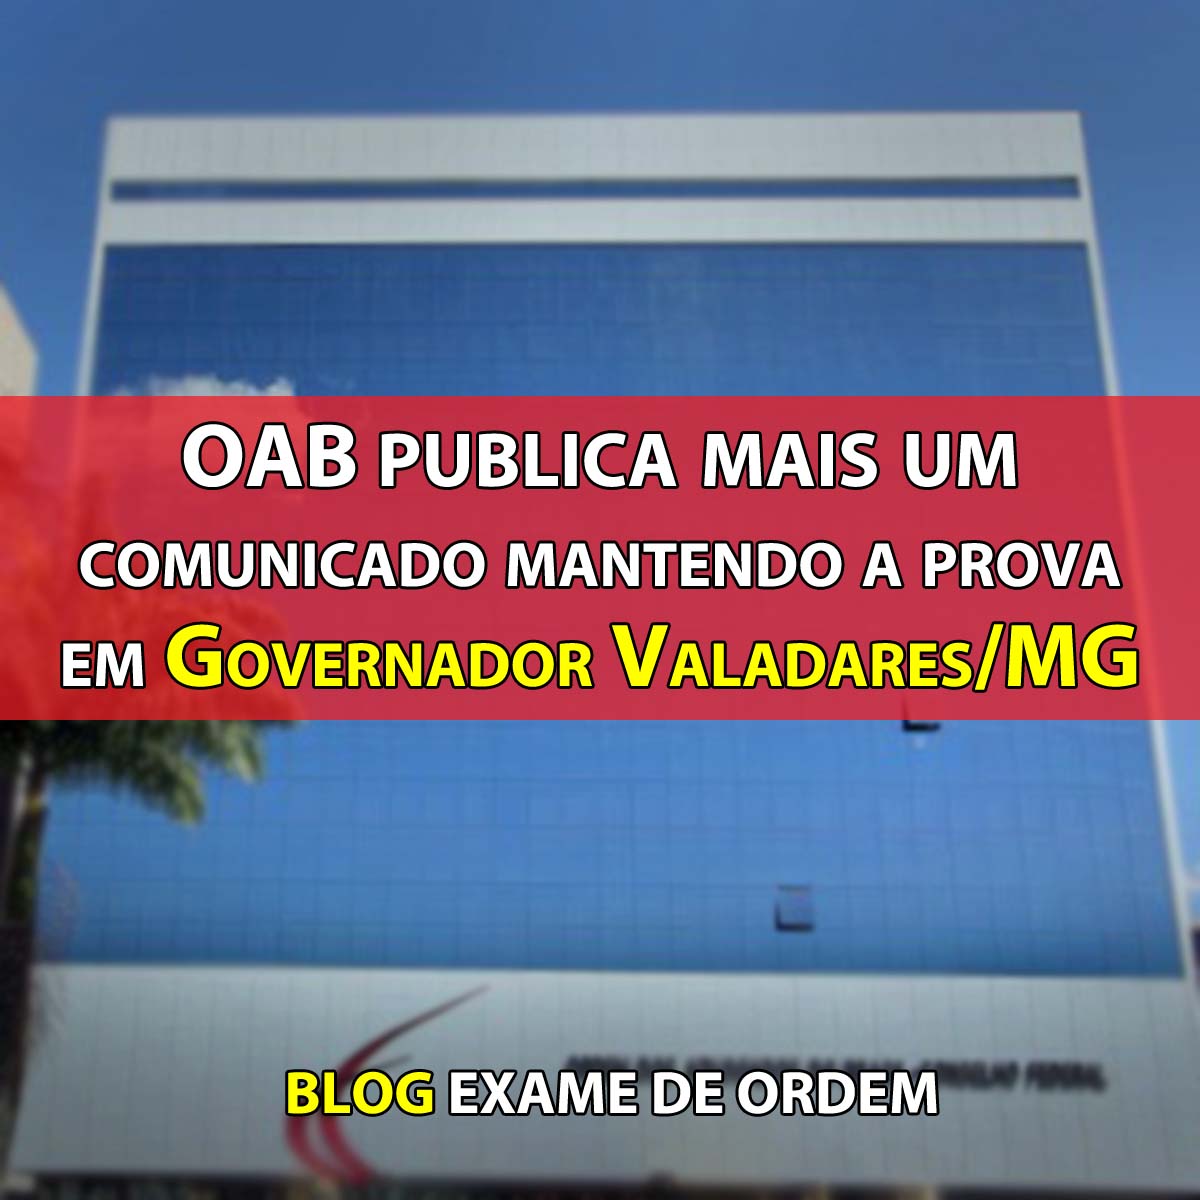 OAB publica mais um comunicado mantendo a prova em Governador Valadares/MG